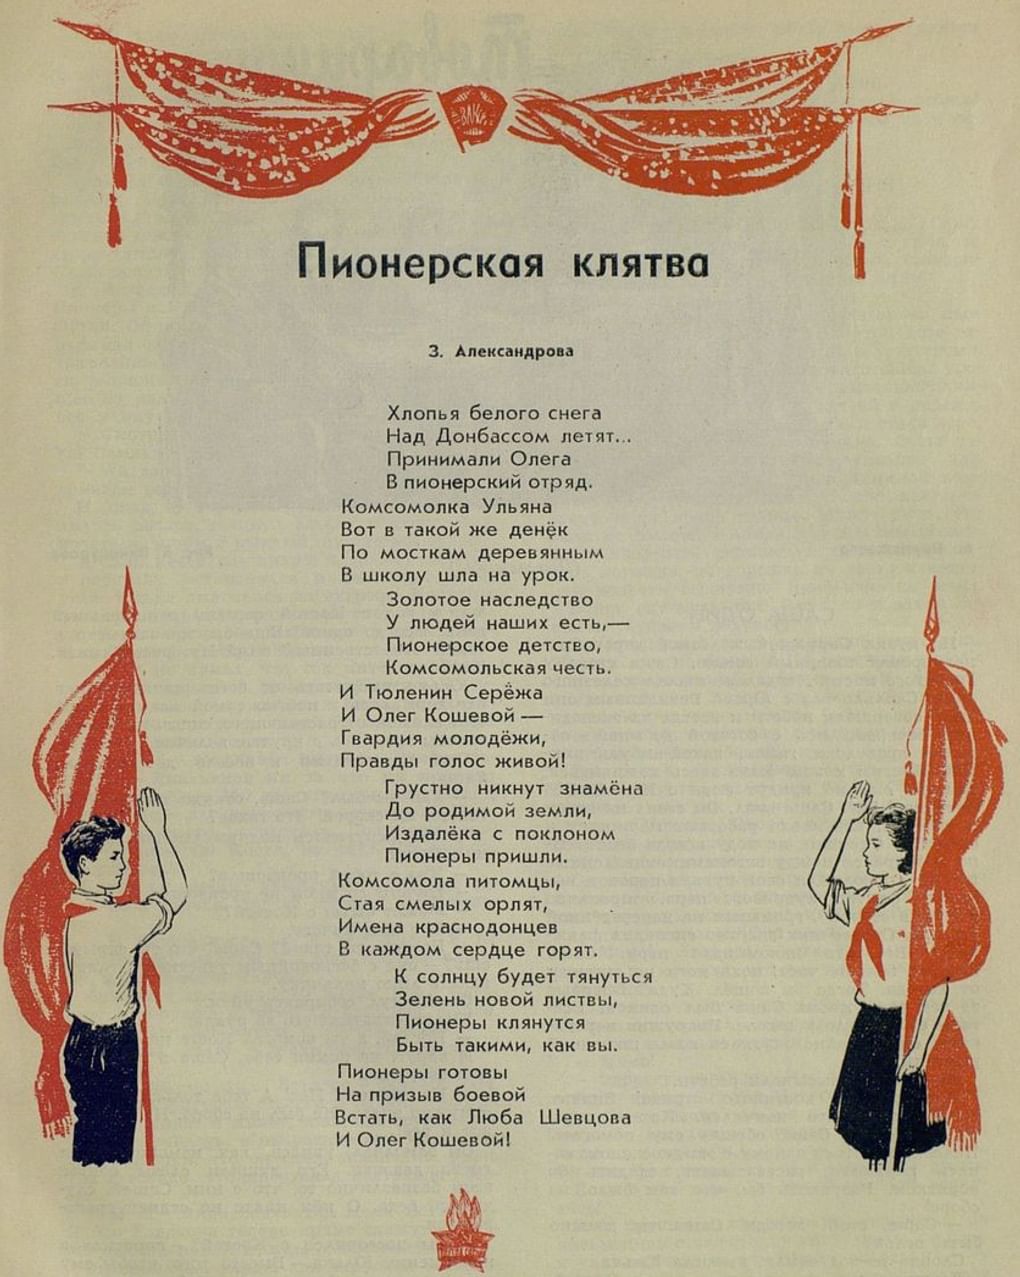 Журнал «Пионер» № 2. Москва: издательство «Правда», 1949